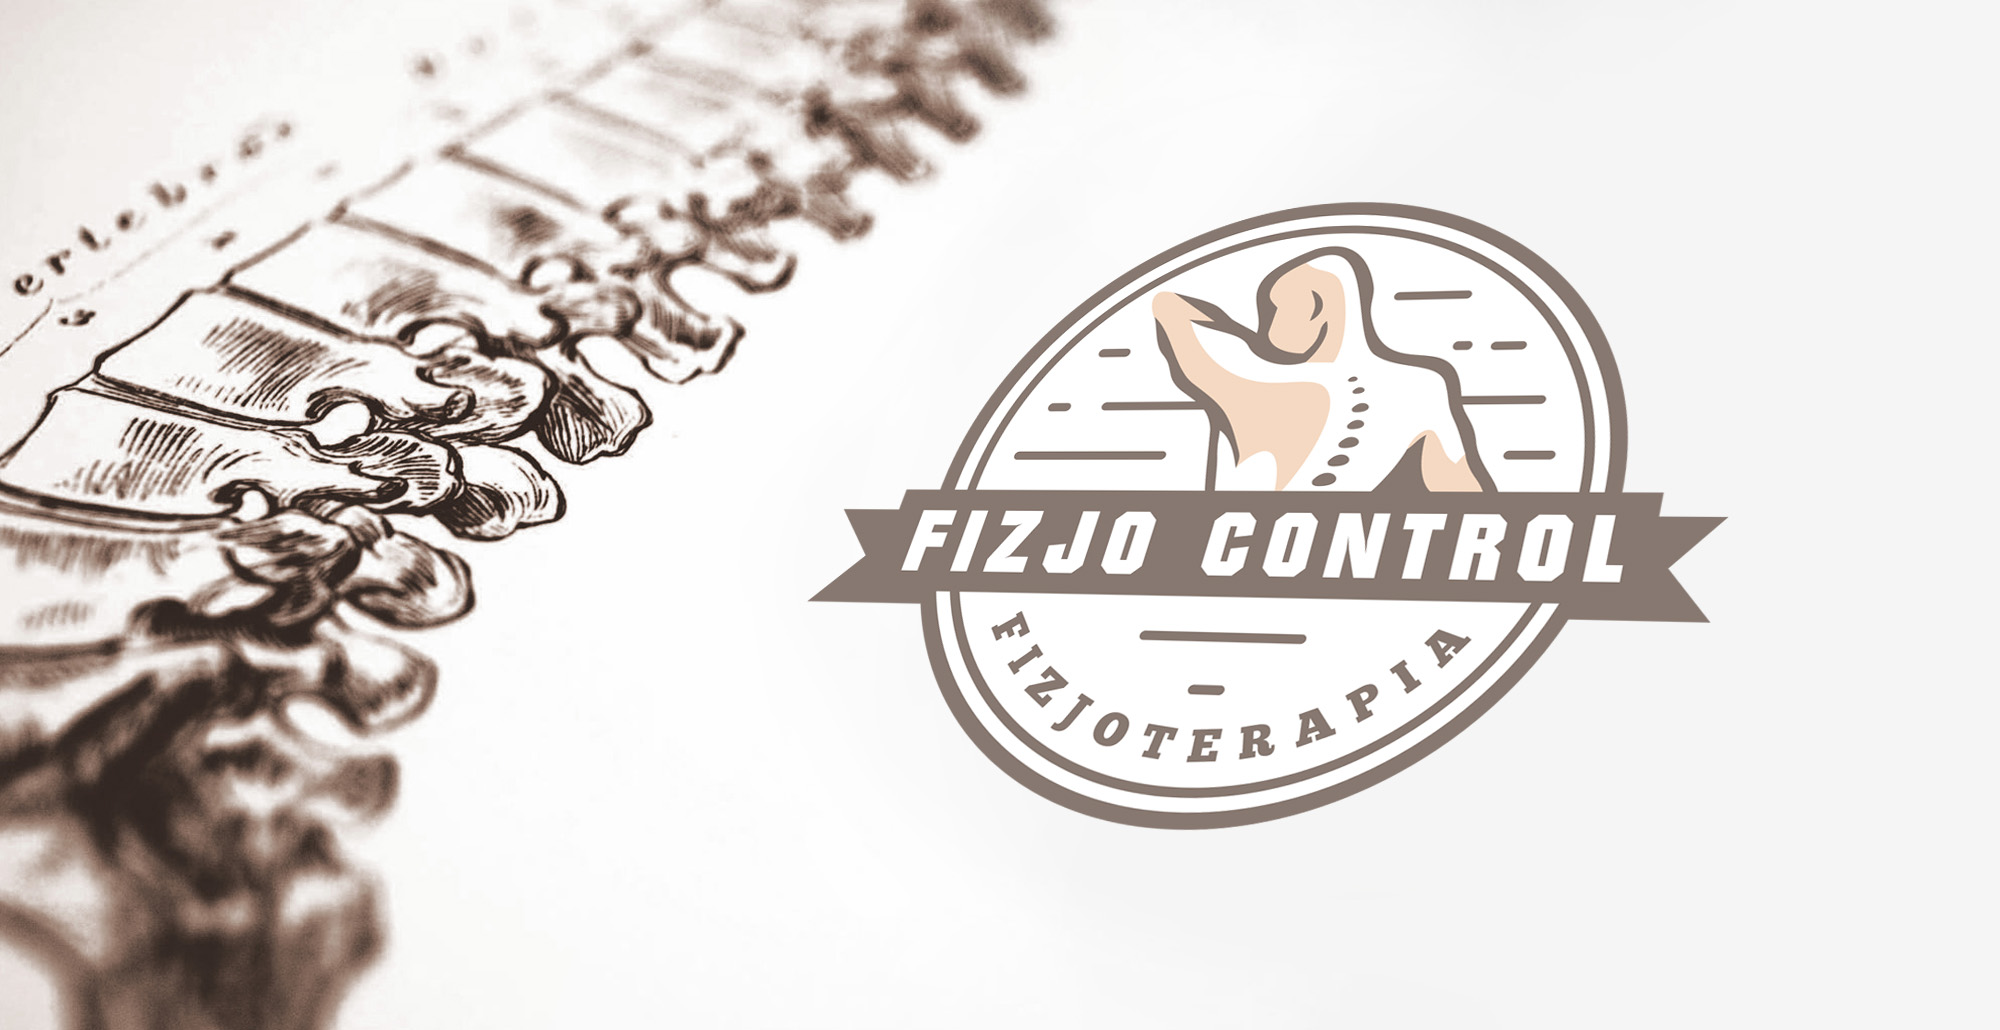 Fizjo Control - Fizjoterapia - Kolbudy. Shadowart projekt logo, wizytówki, bannery.